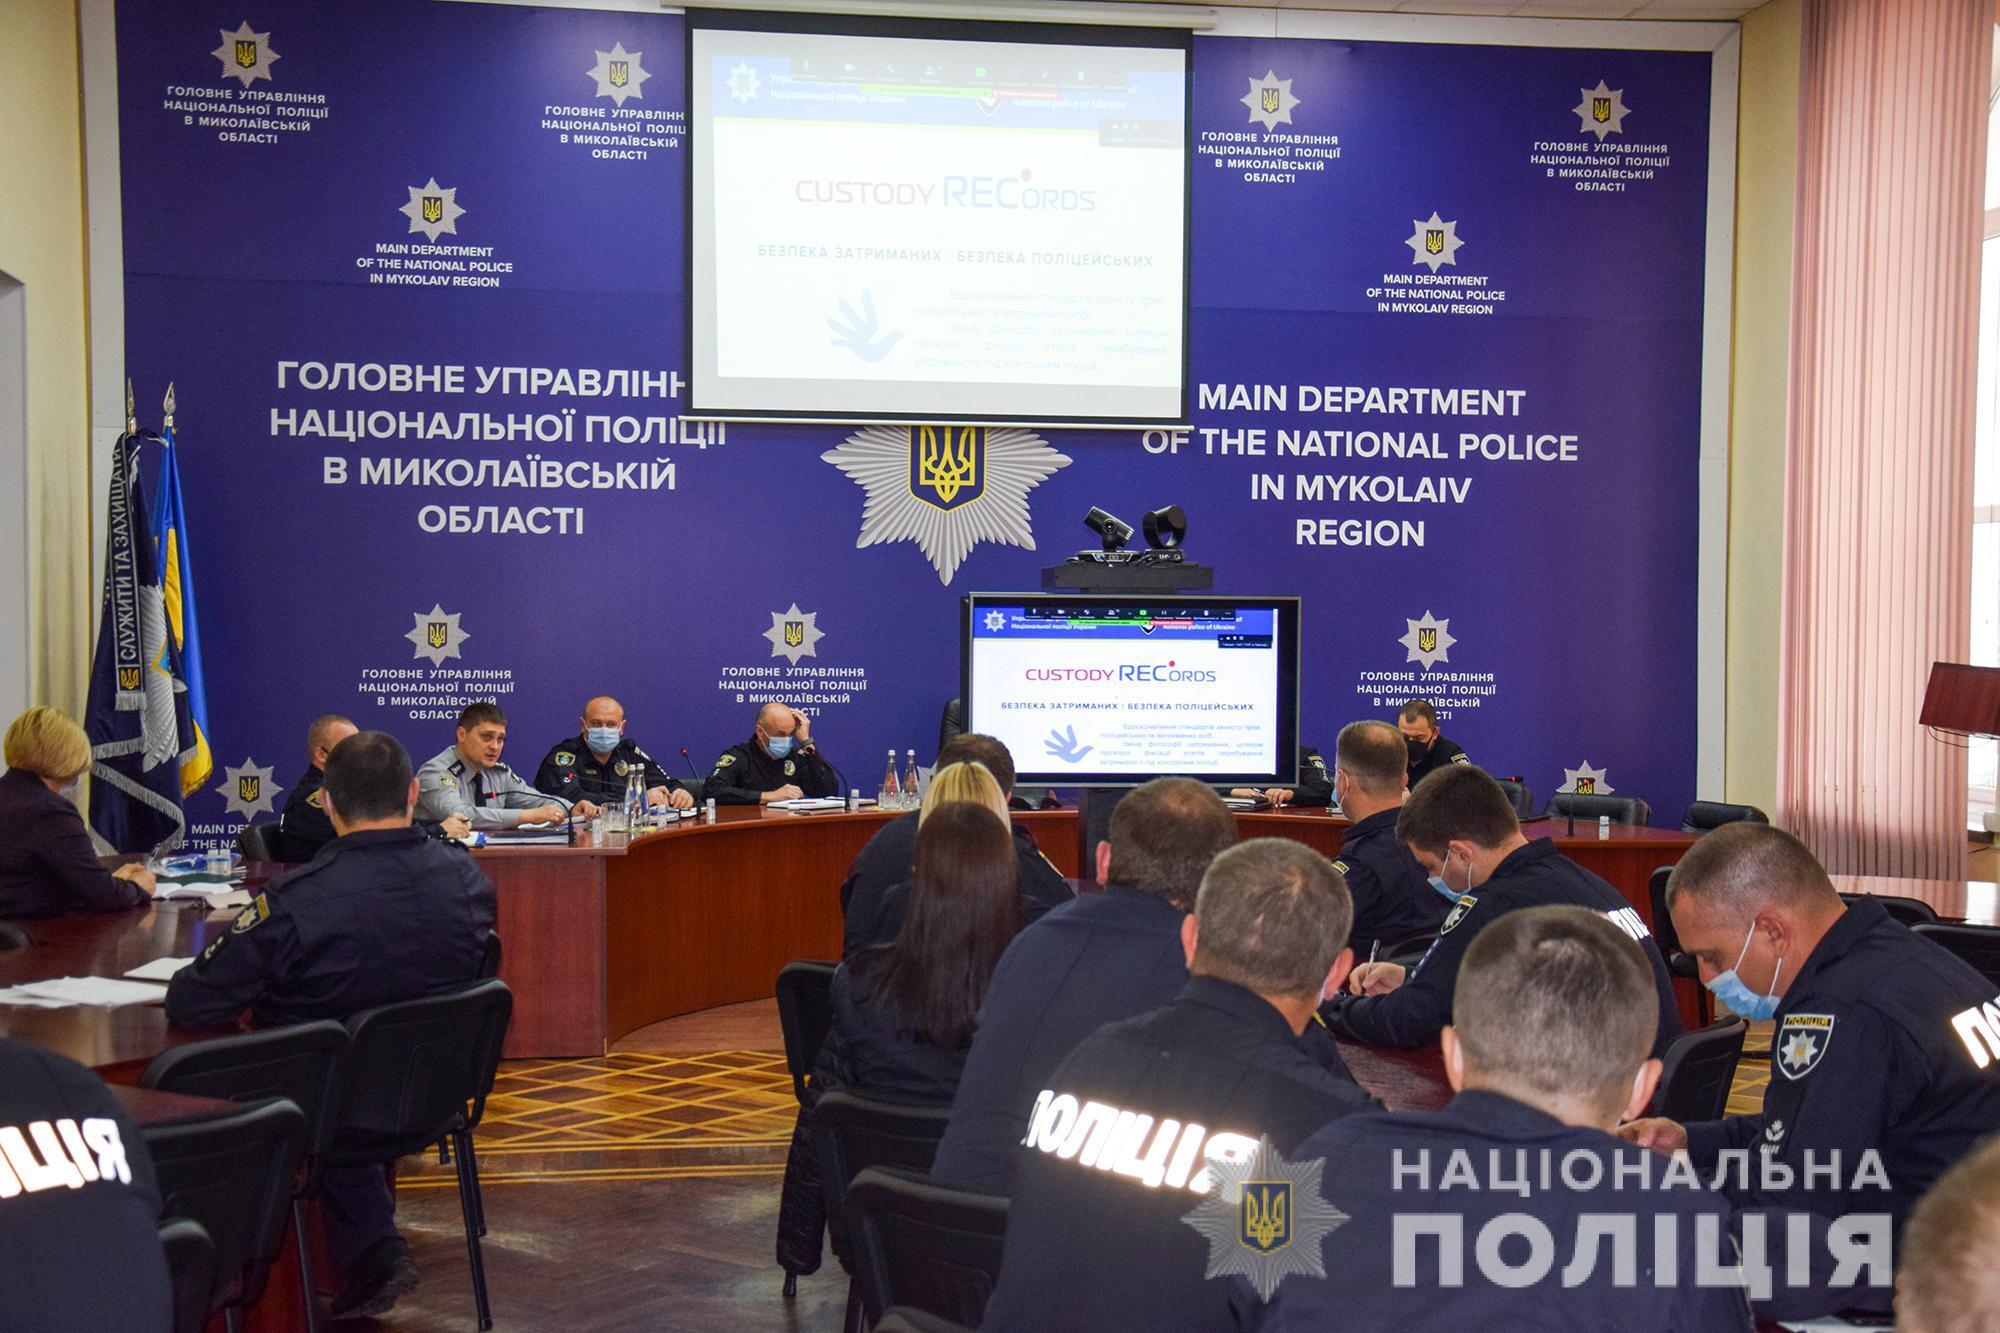 На Миколаївщині планується запровадження системи контролю «Сustody records»